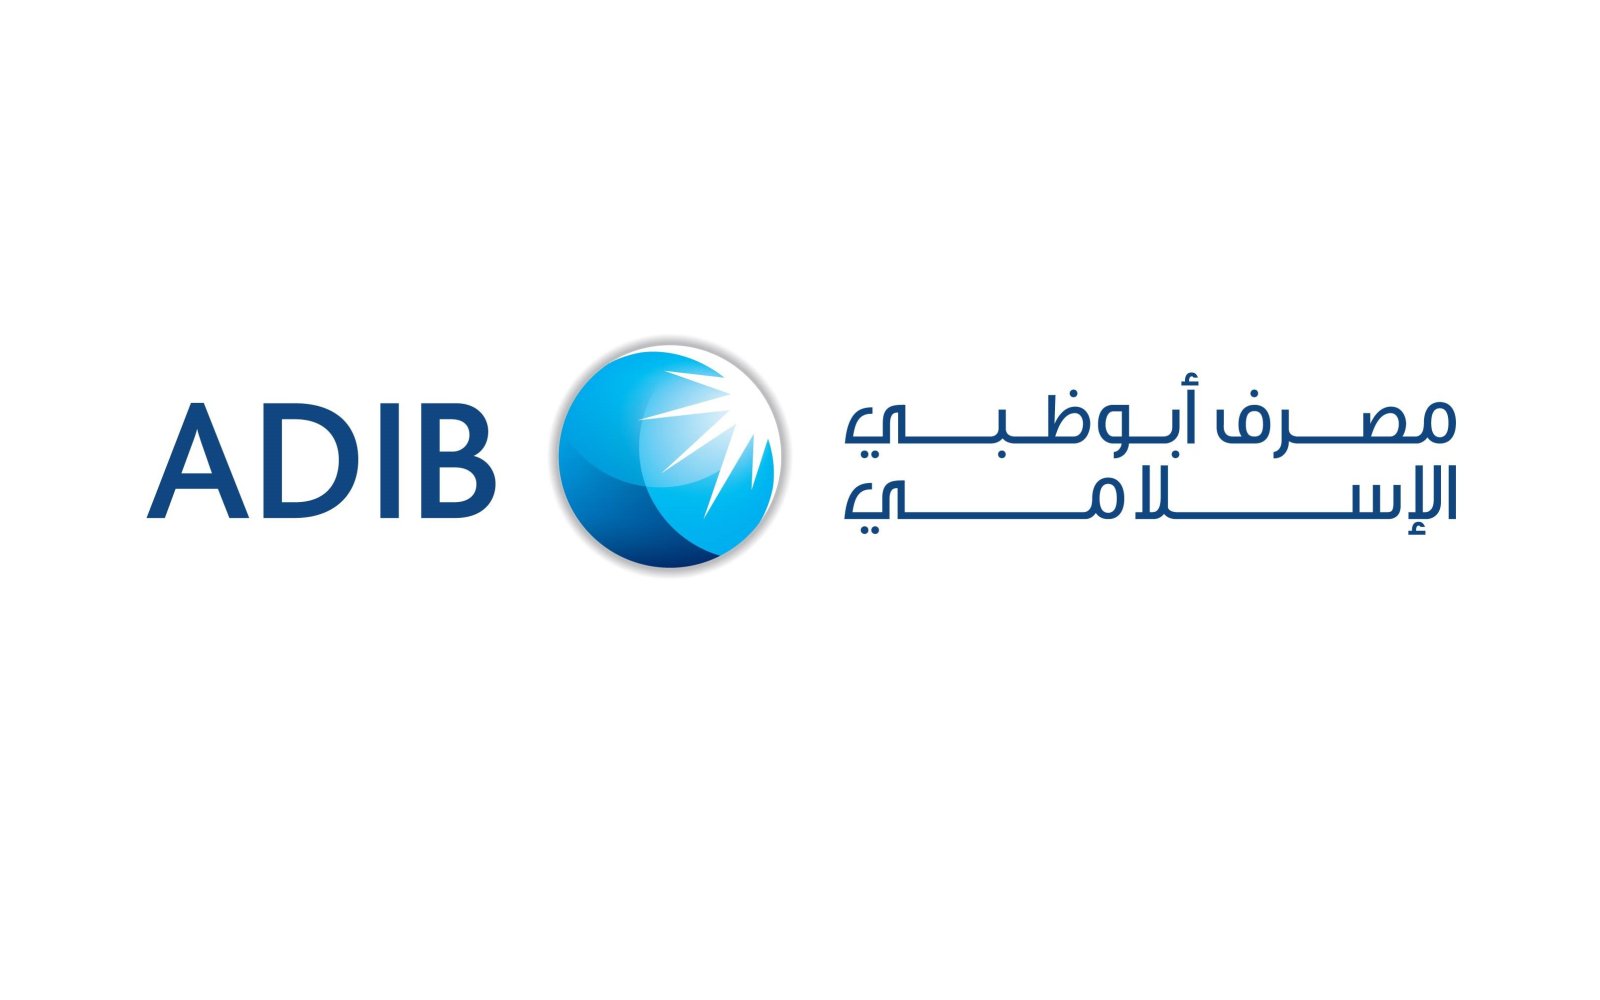 قرض السيارة مصرف أبو ظبي الإسلامي وشروط الحصول عليه وفترات السداد